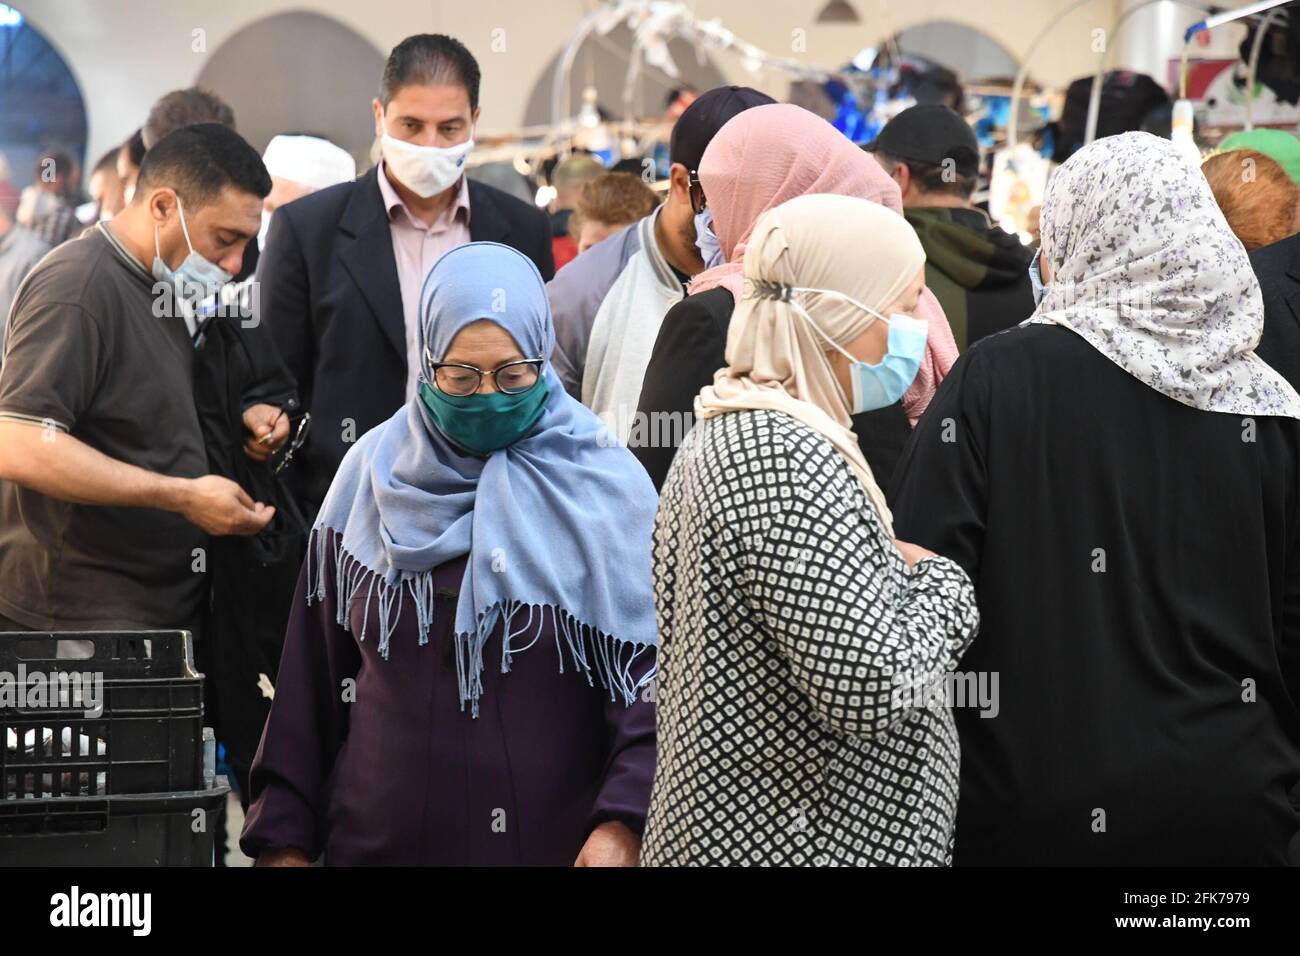 Túnez, Túnez. 28th de Abr de 2021. Las personas que llevan máscaras caminan en una calle del centro de Túnez, Túnez, 28 de abril de 2021. En medio del aumento de los casos de COVID-19 en Túnez, las autoridades tunecinas anunciaron el miércoles una serie de medidas más estrictas de prevención y control para frenar la propagación del virus. Crédito: Adel Ezzine/Xinhua/Alamy Live News Foto de stock